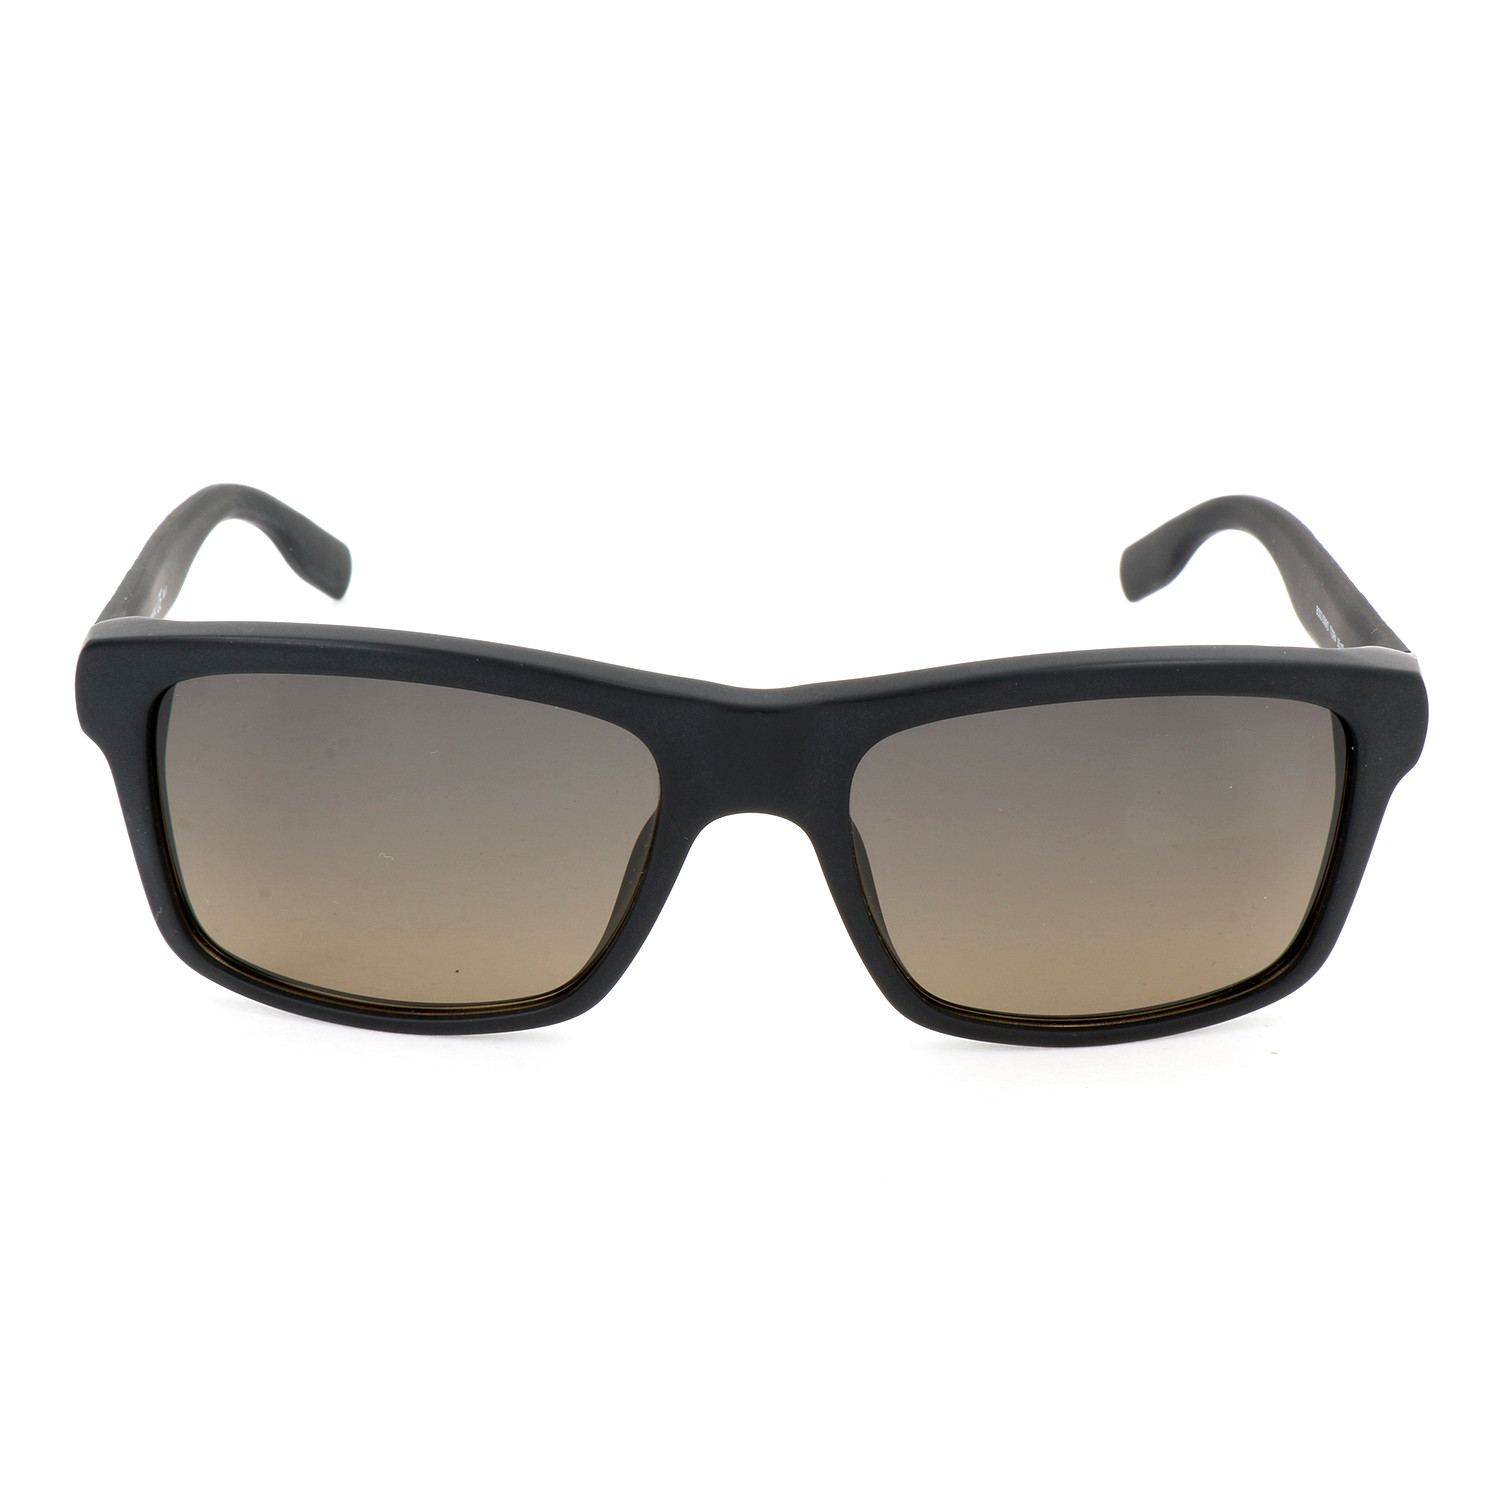 Men's 0509 Polarized Sunglasses // Matte Black - Hugo Boss - Touch of ...